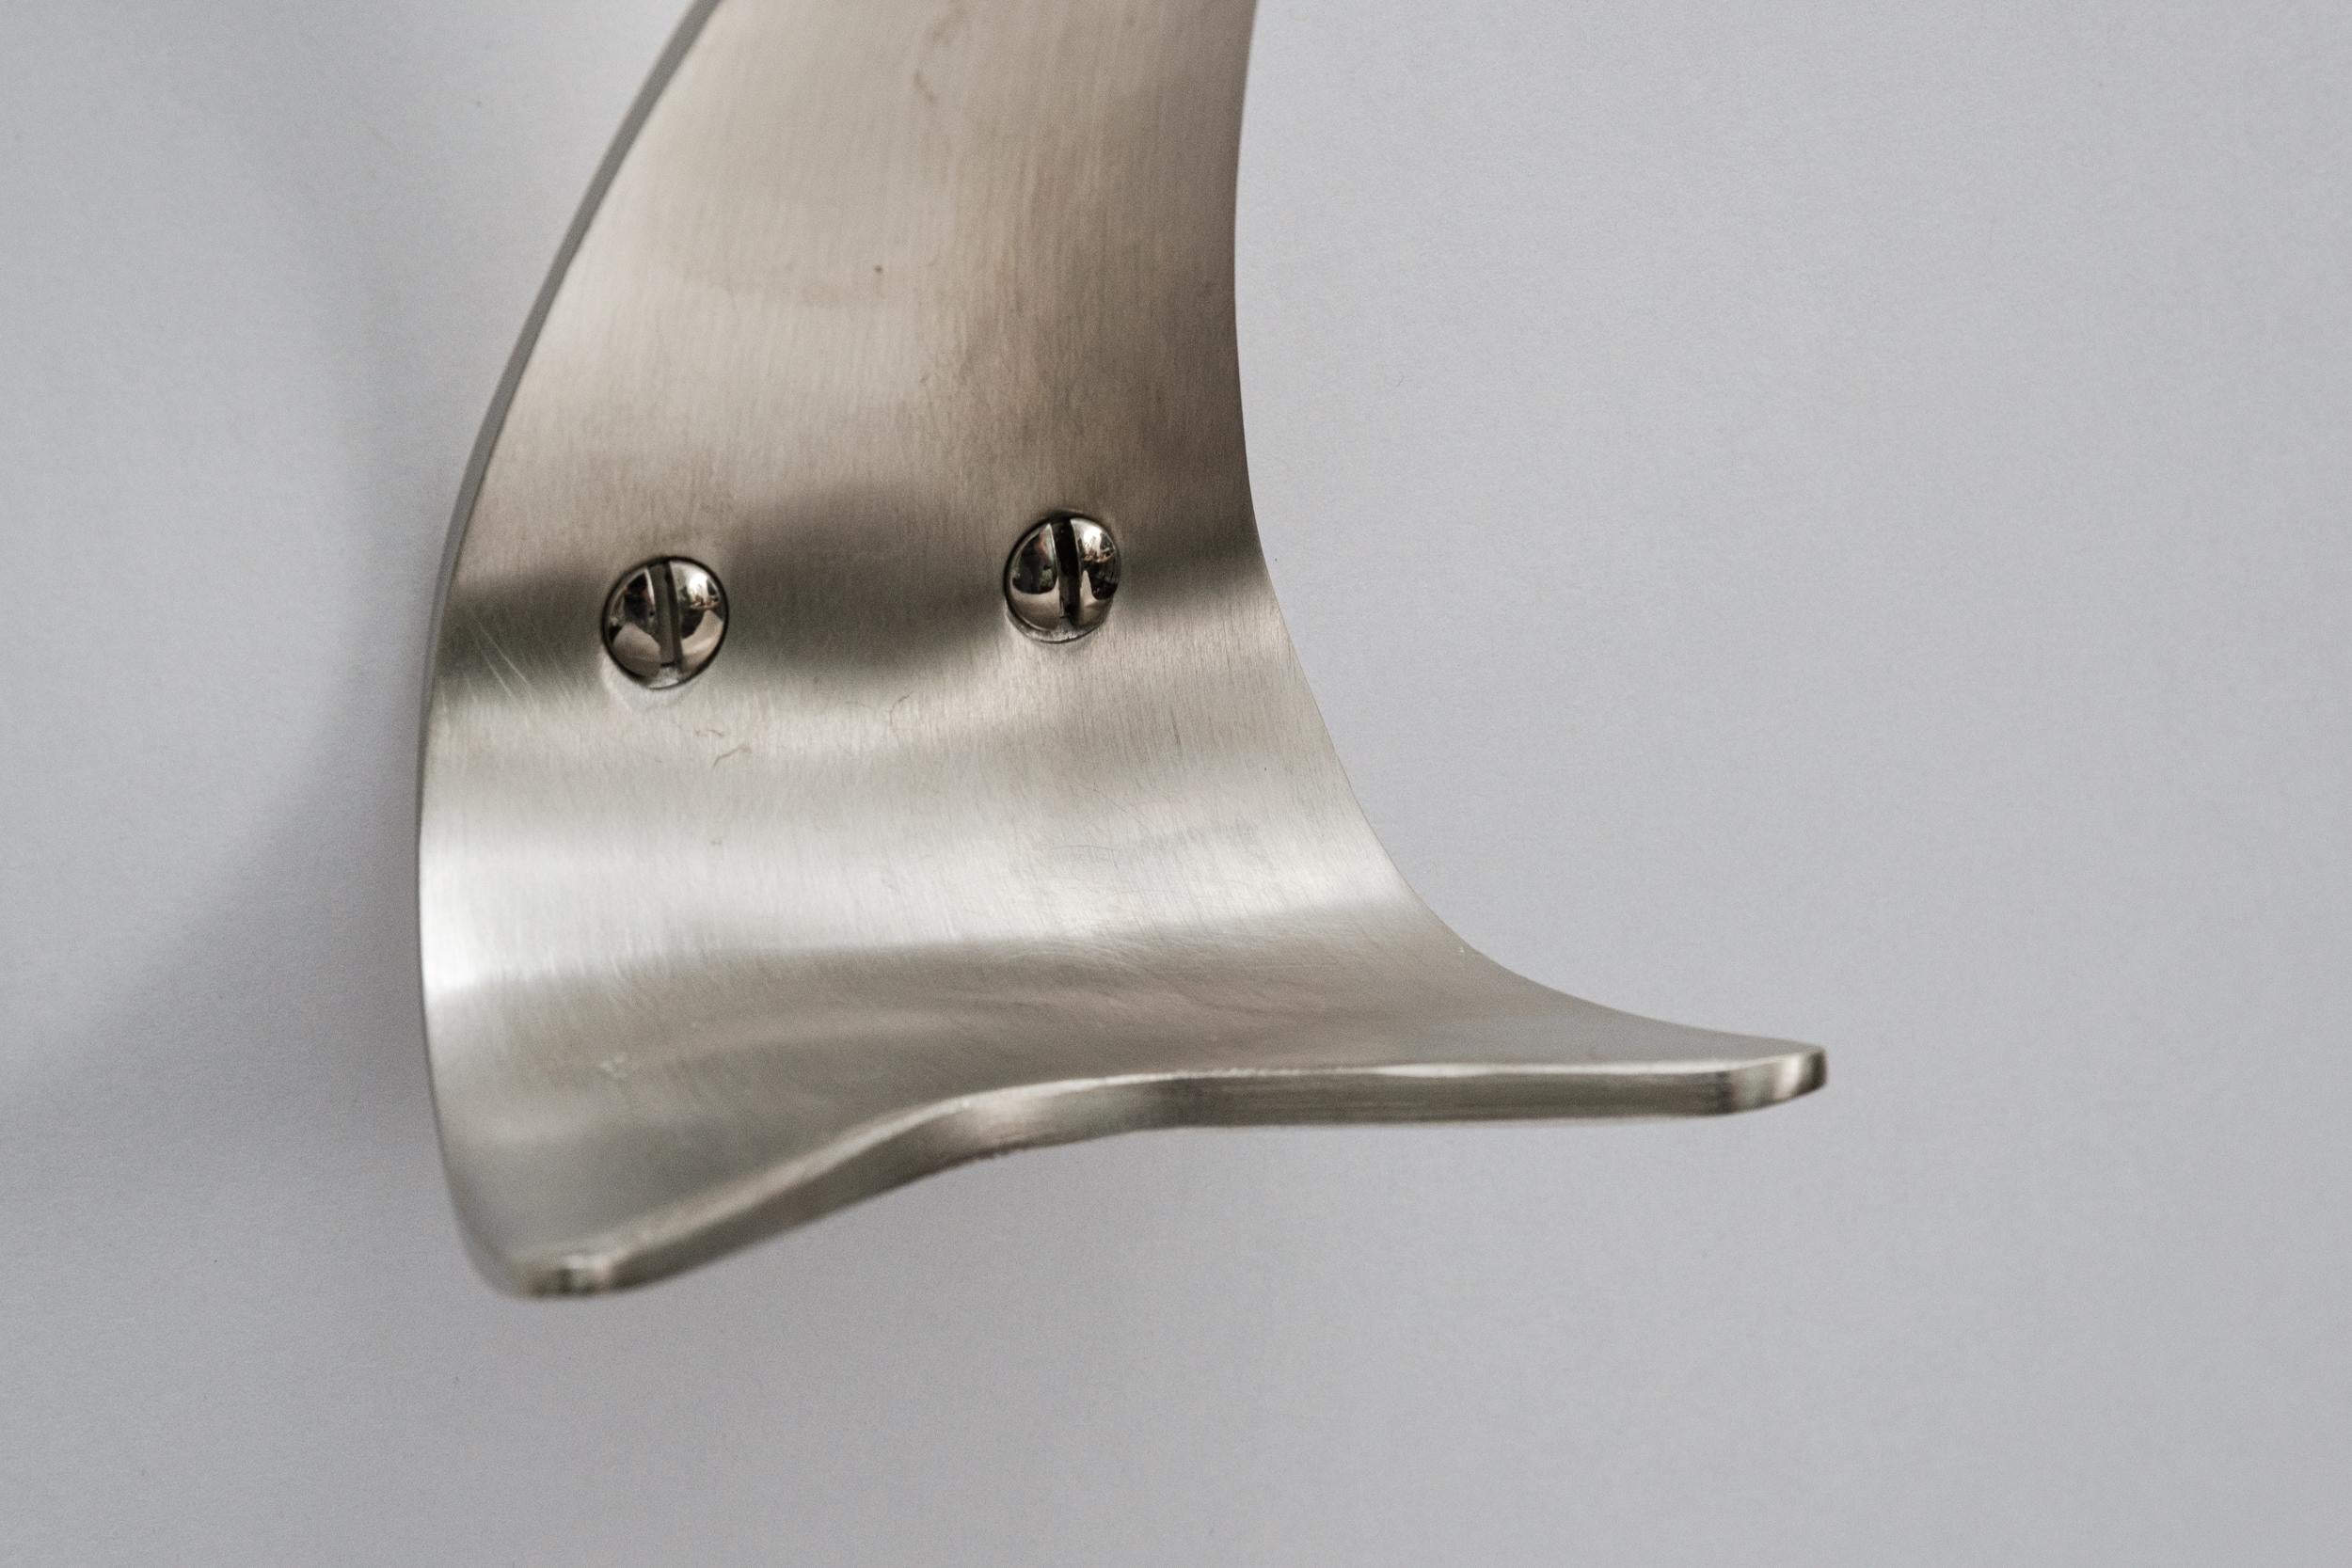 Carl Auböck Model #4086 nickel hook. Designed in the 1950s, this versatile and Minimalist Viennese hook is executed in brushed nickel by Werkstätte Carl Auböck, Austria. 

Produced by Carl Auböck IV in the original Auböck workshop in the 7th